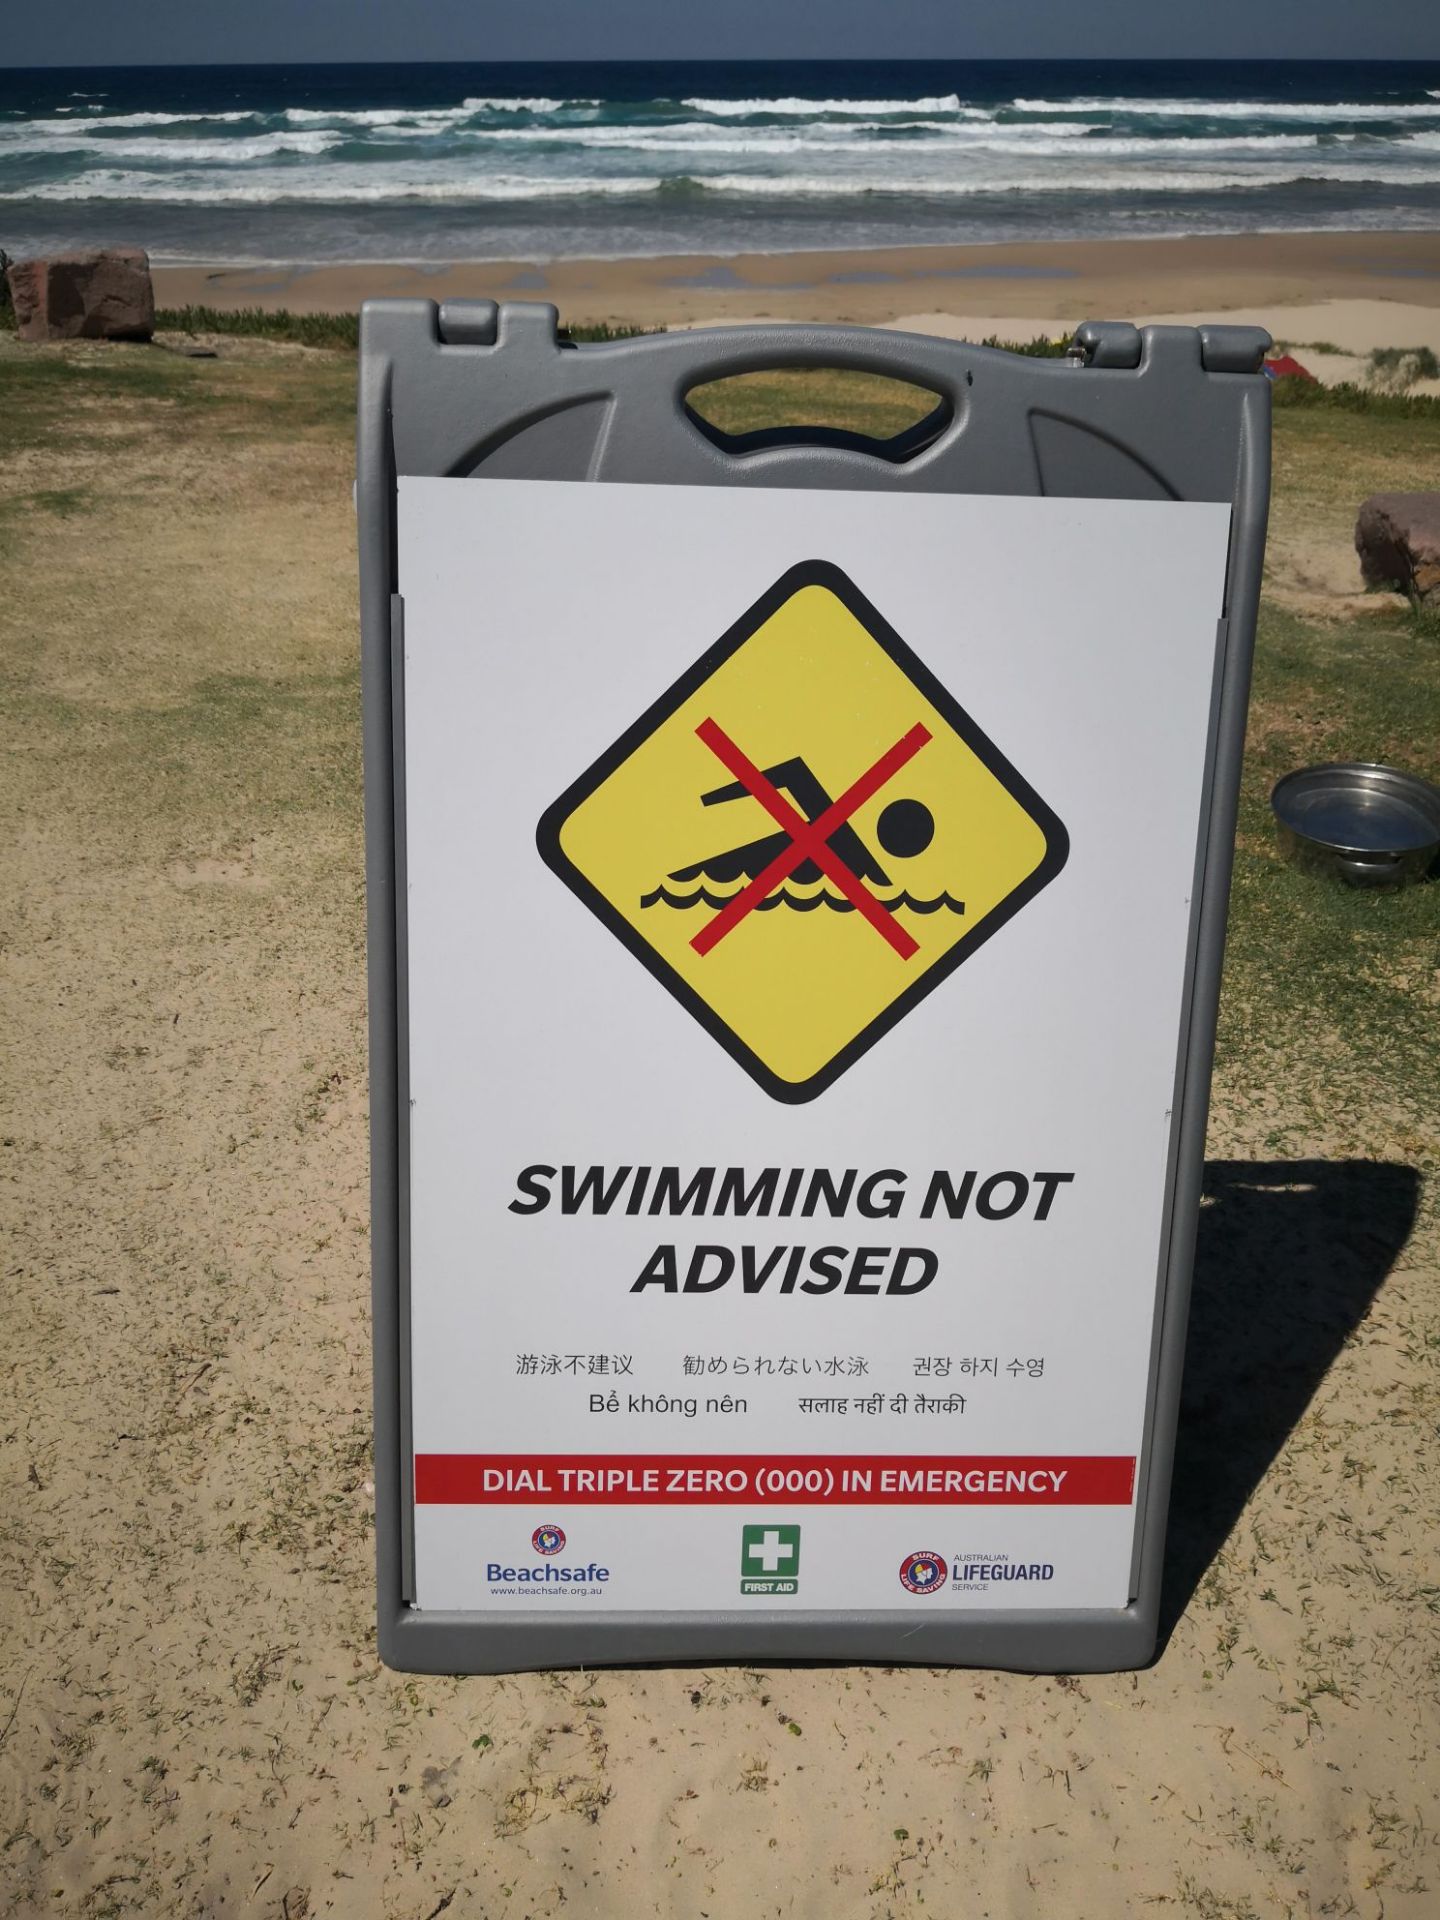 在澳洲海滩常常可以看到对冲浪和游泳者发出的警示和明确的标识，以避免危险发生。